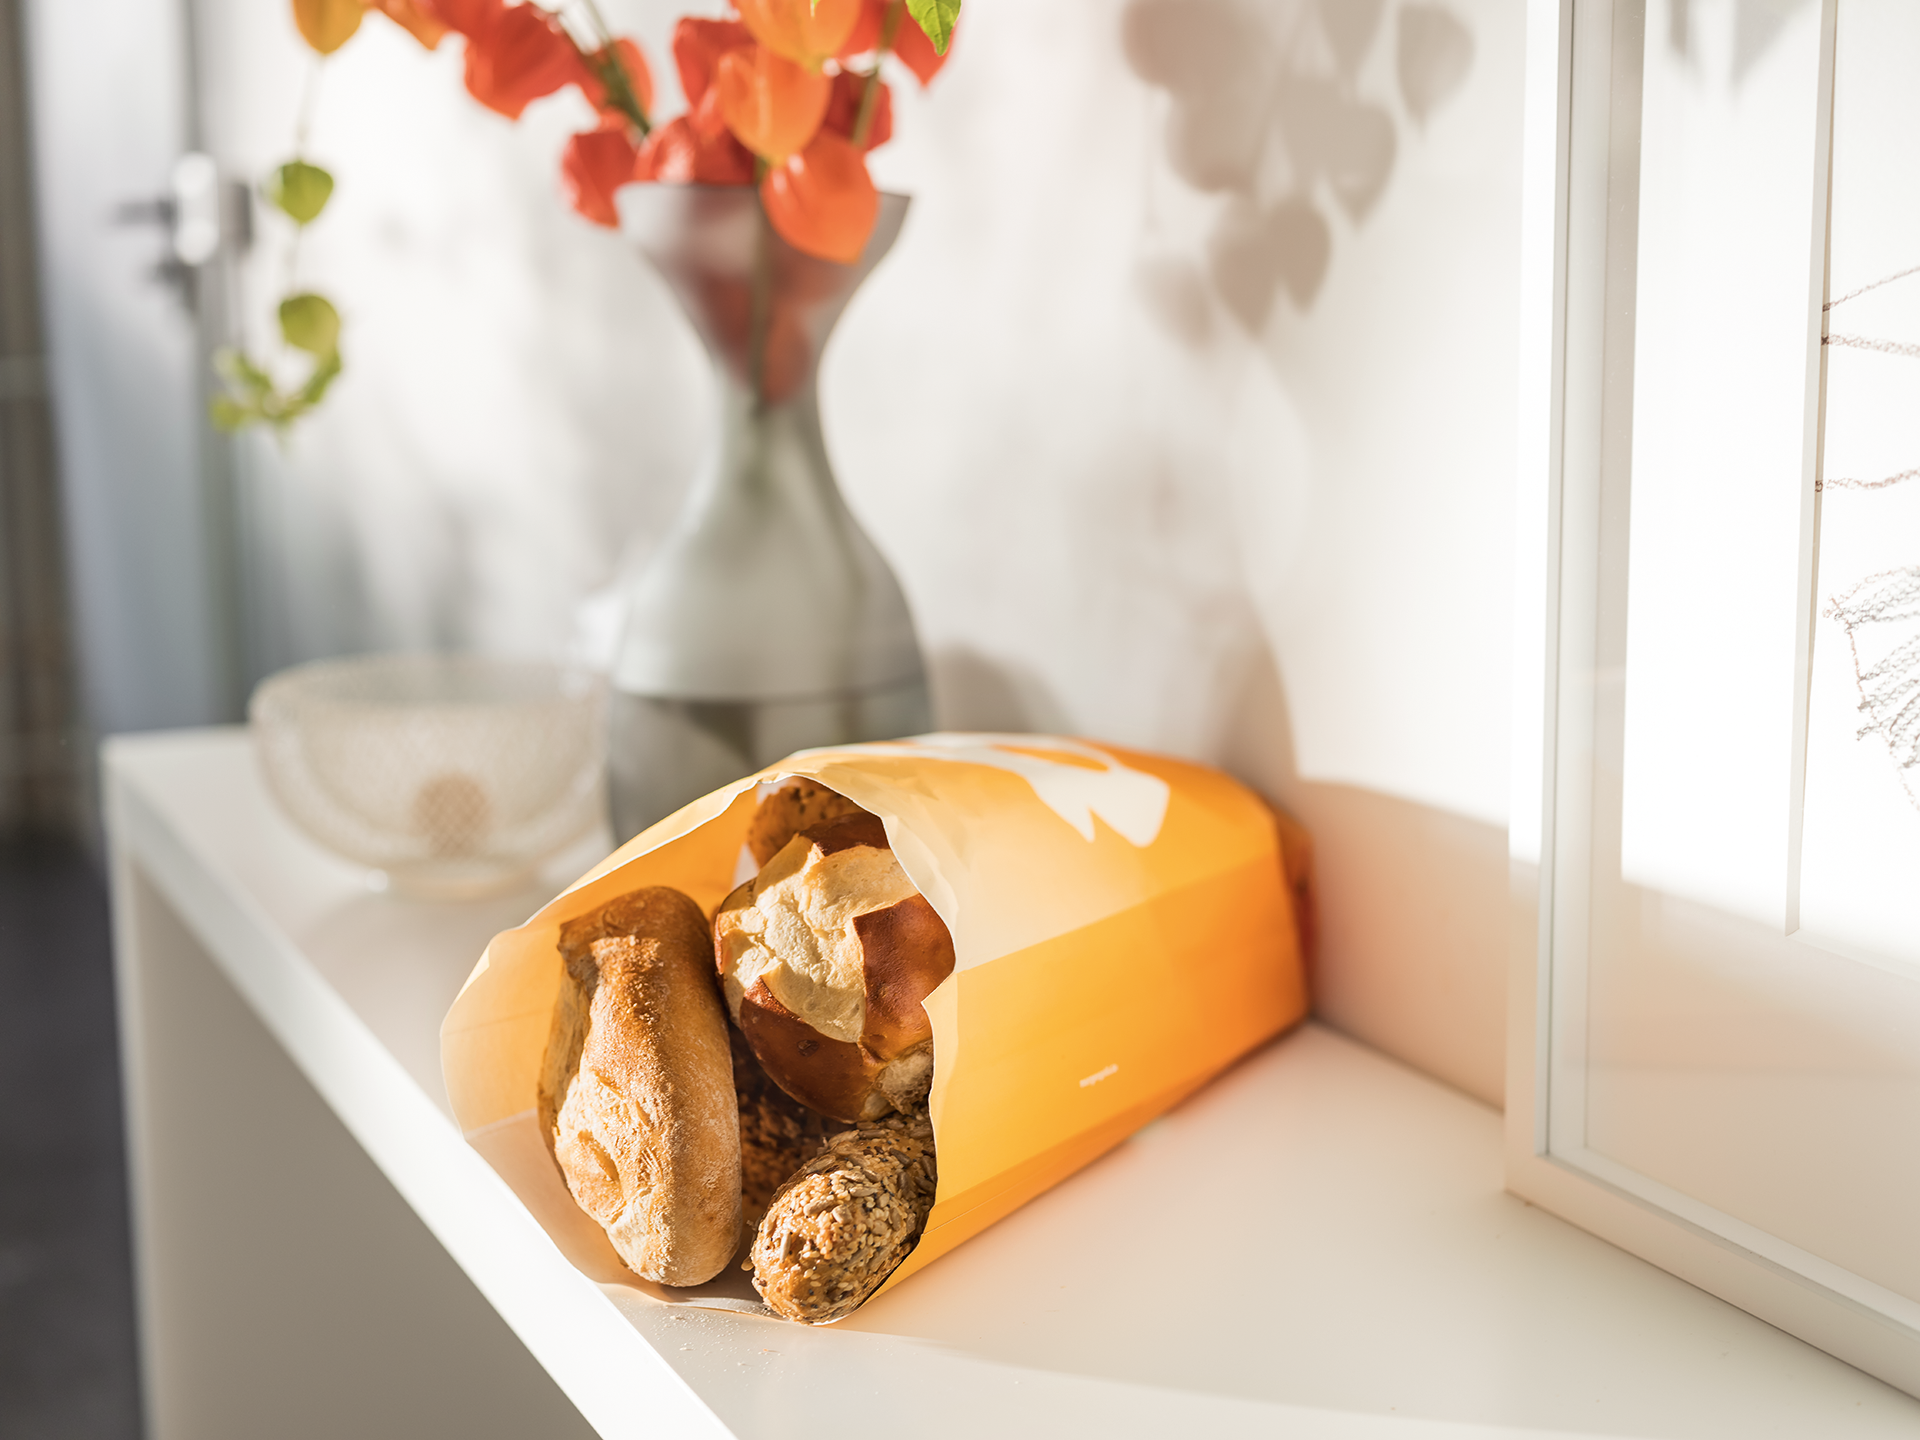 Morgengold Frühstückdienste ist Ihr Brötchenlieferservice in Kiel und Umgebung. 
Wir liefern Ihnen frische Brötchen direkt an die Haustüre - auch an Sonntagen und Feiertagen. 

Frühstück bestellen, Frühstücksservice, Frühstück Lieferservice, Brötchen Lief